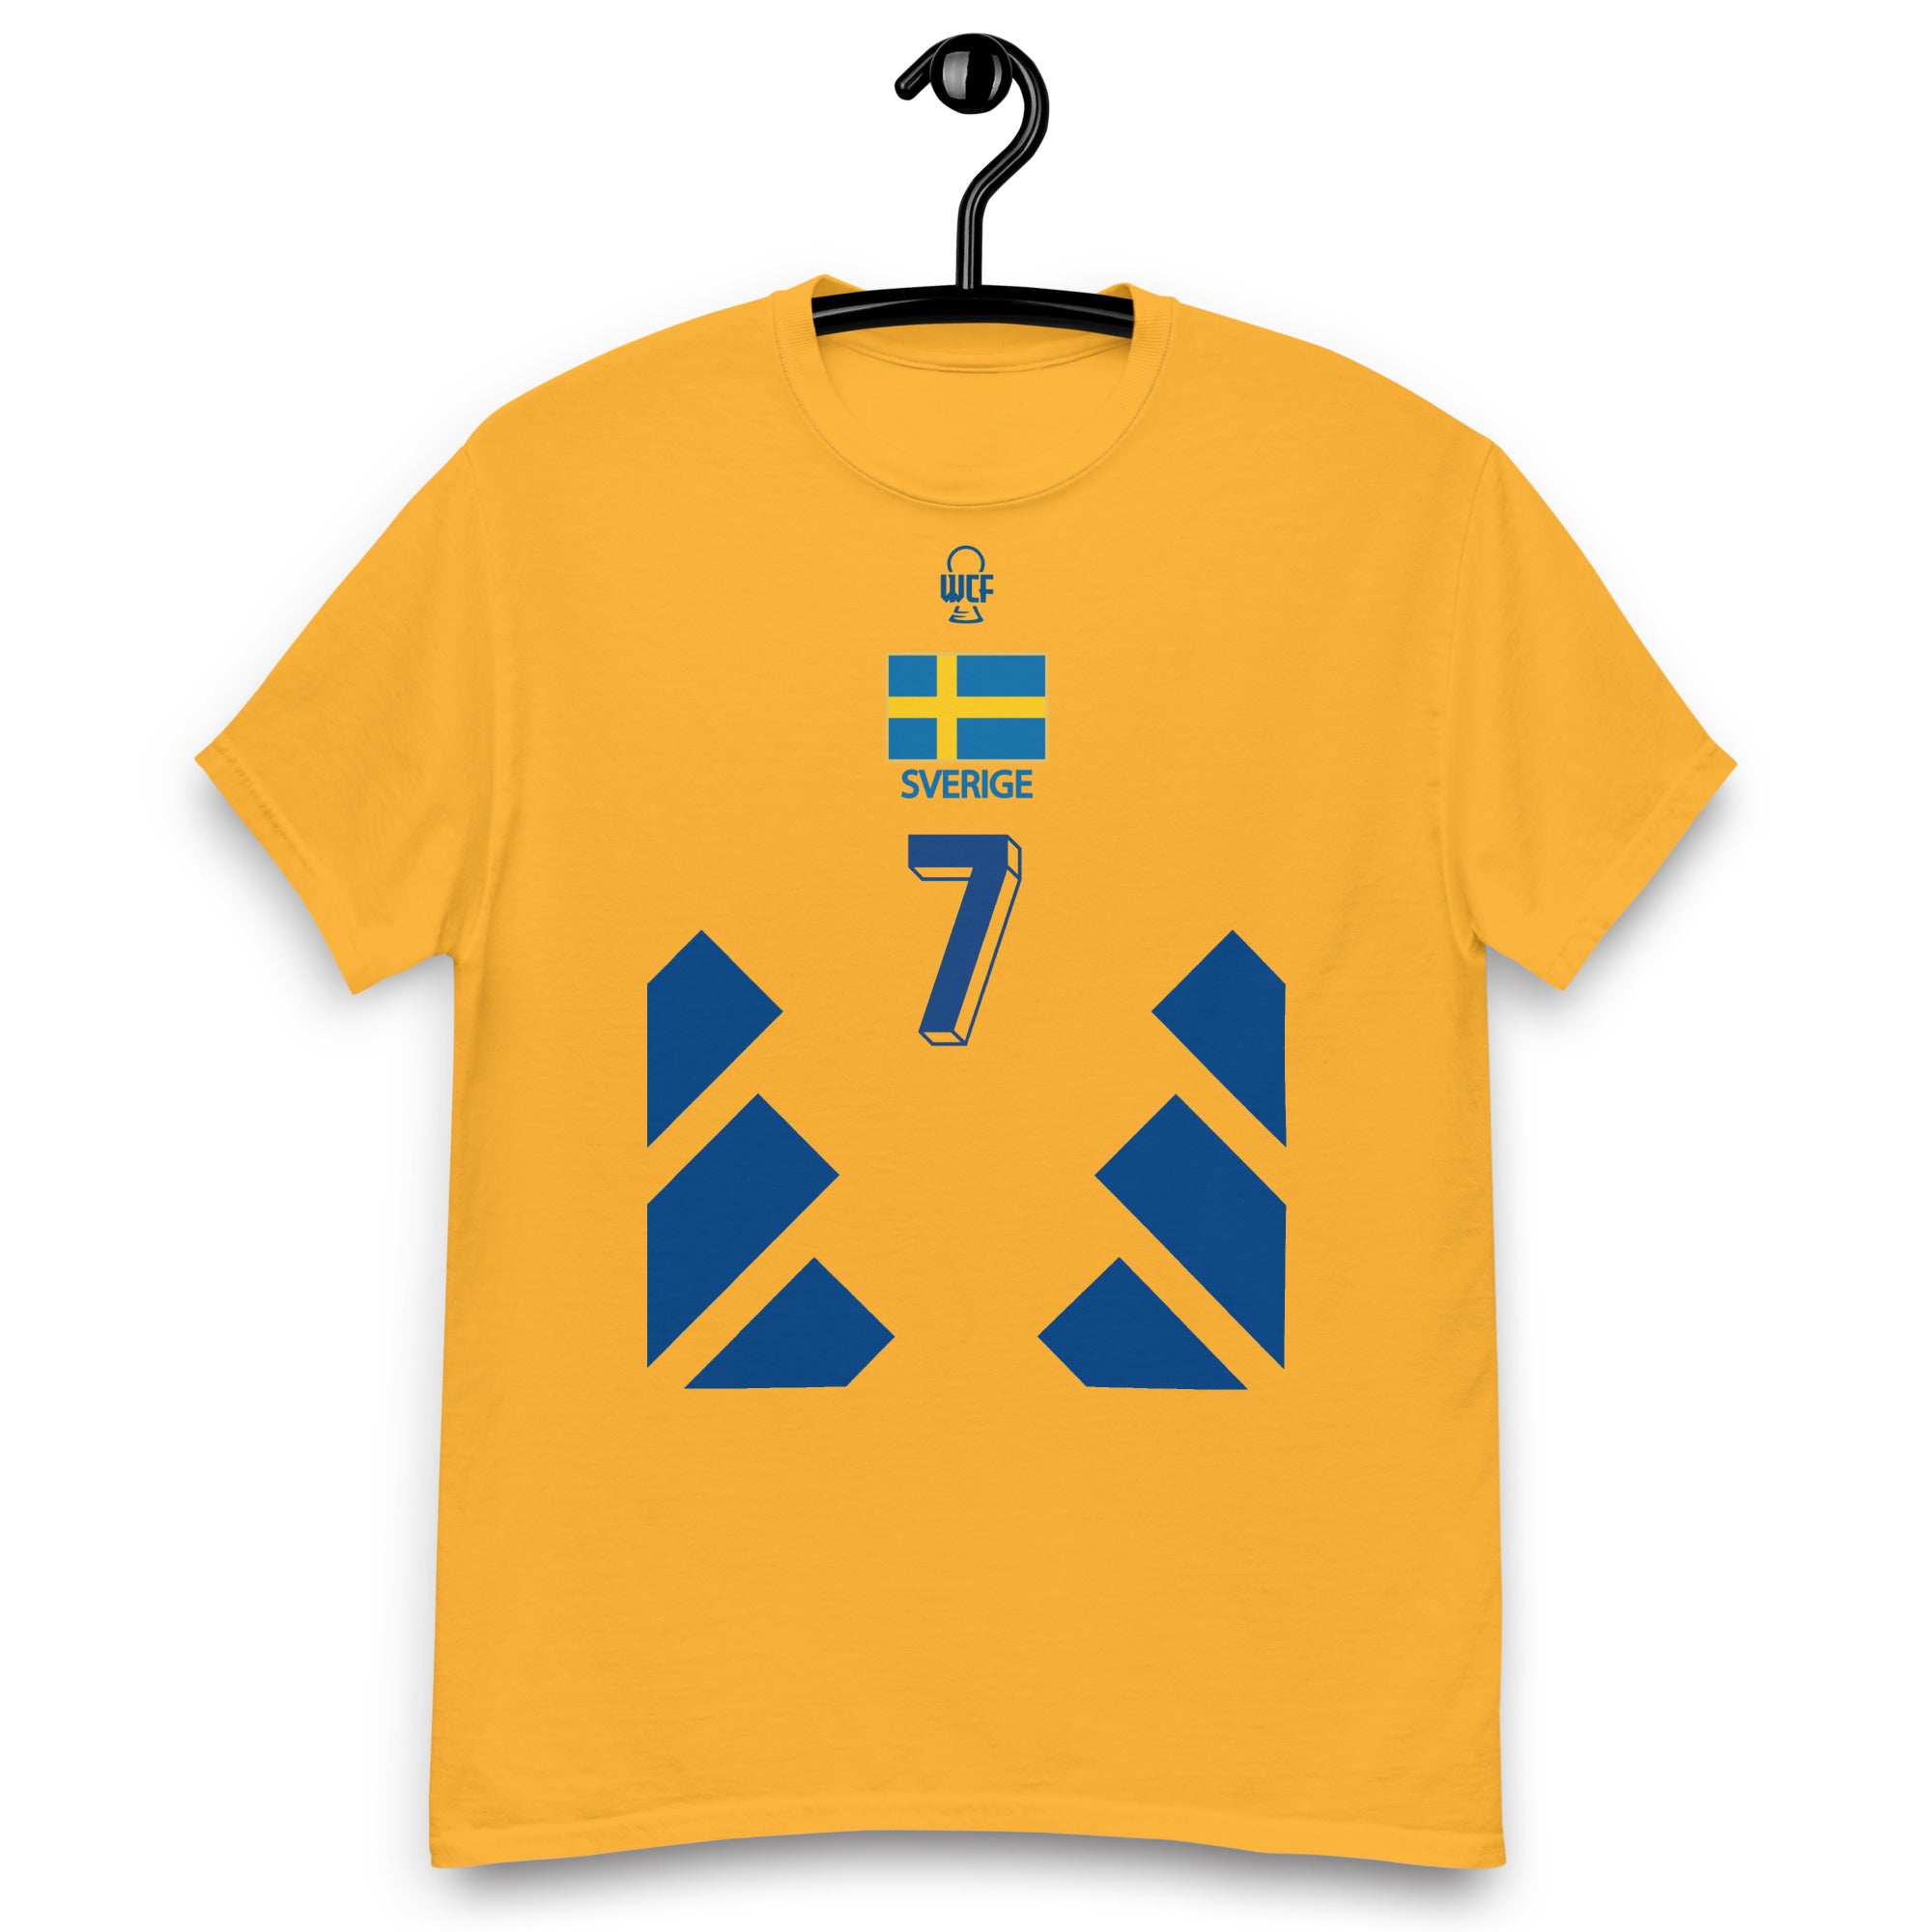 World Cup 1994 LEGENDS Classic T-Shirt - Henrik - Sweden